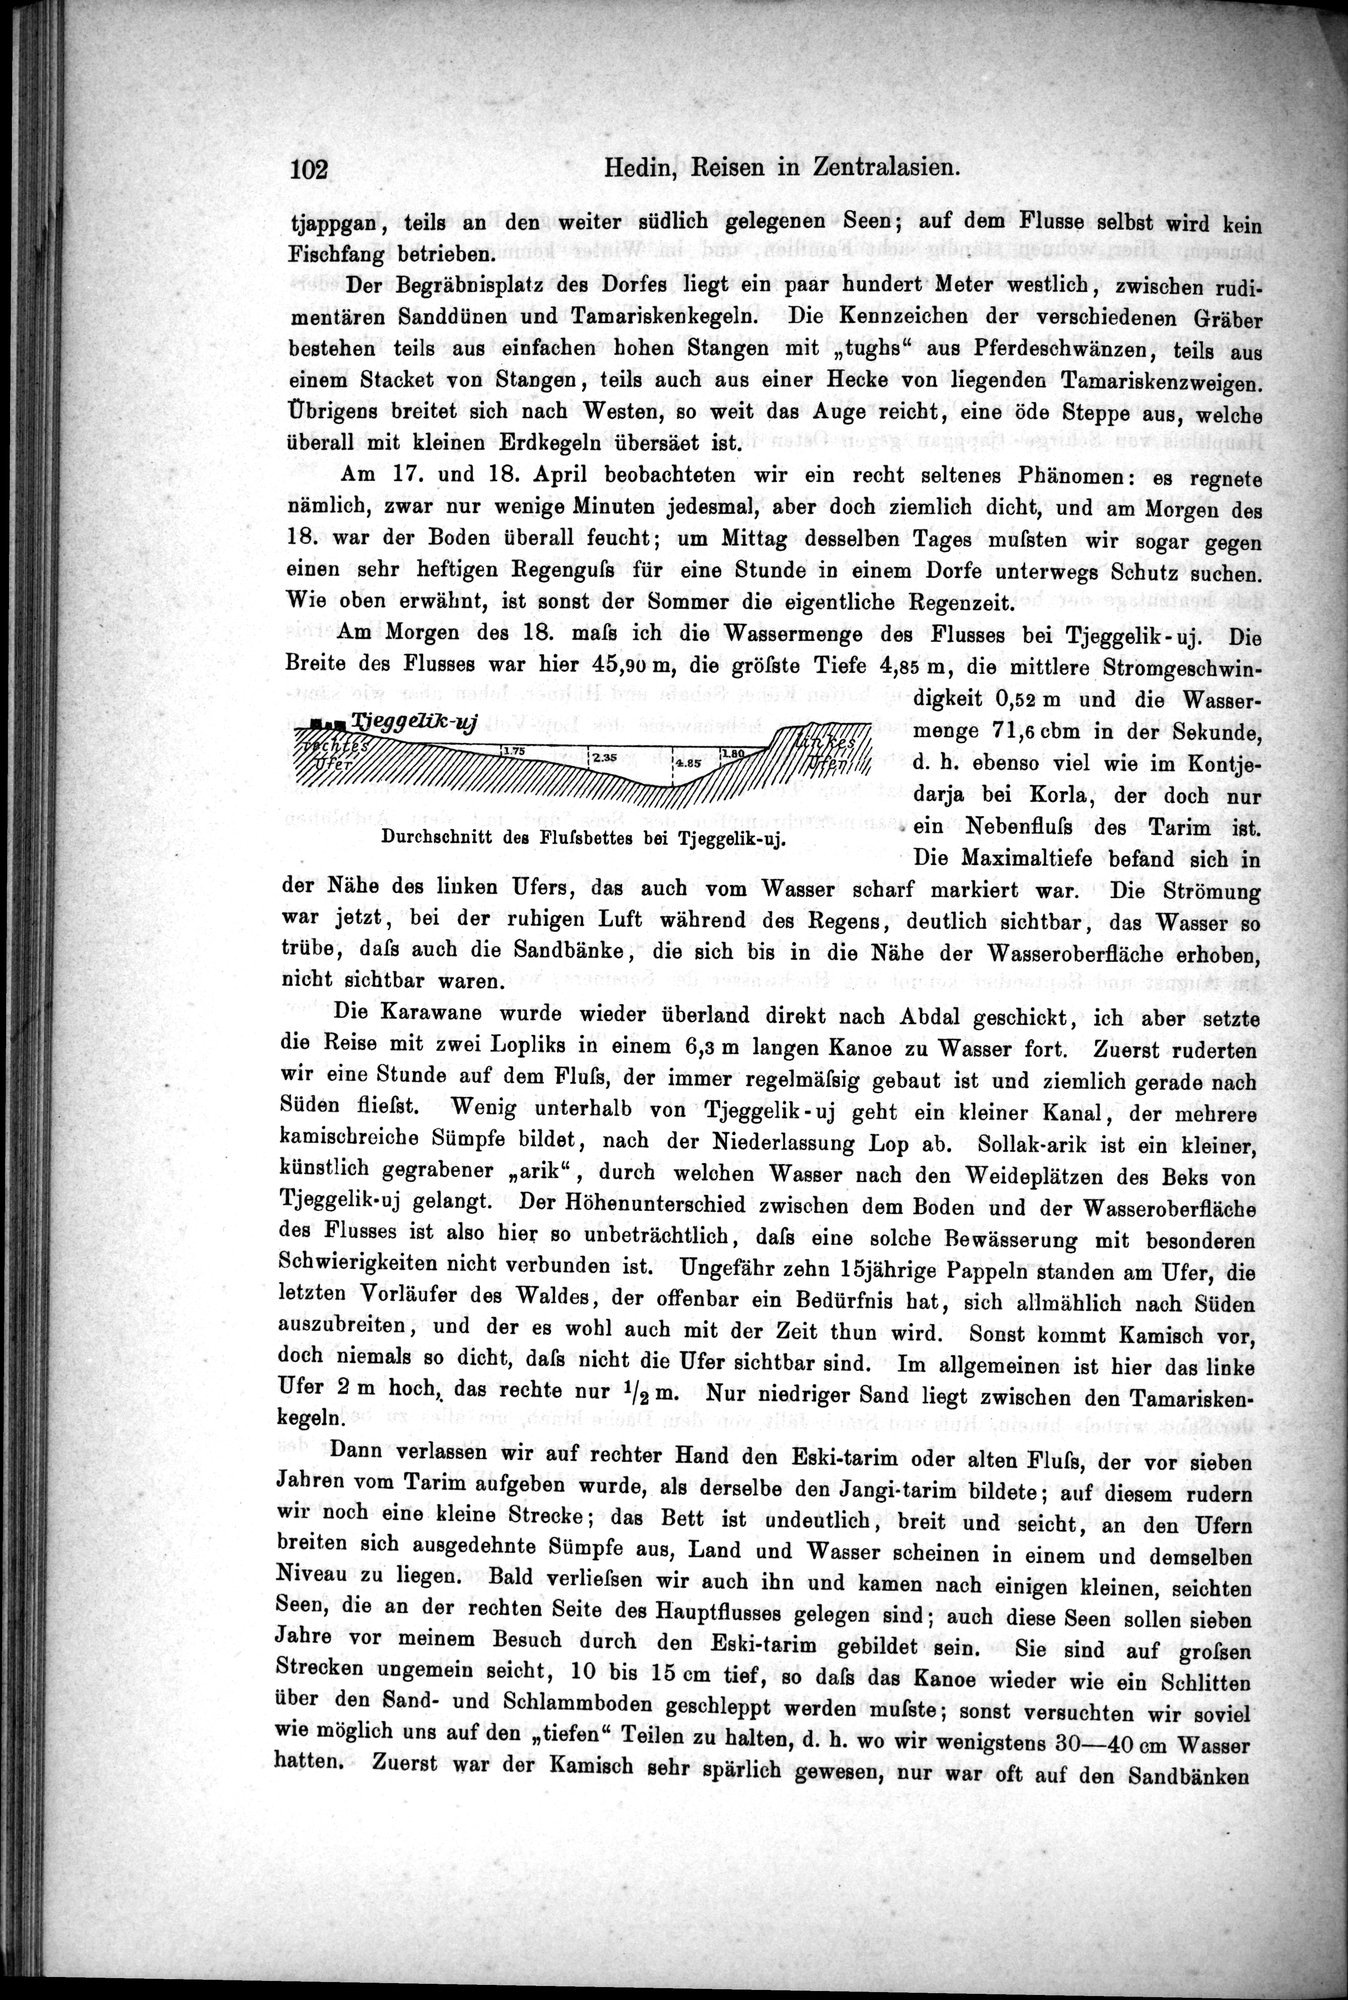 Die Geographische-Wissenschaftlichen Ergebnisse meiner Reisen in Zentralasien, 1894-1897 : vol.1 / Page 114 (Grayscale High Resolution Image)